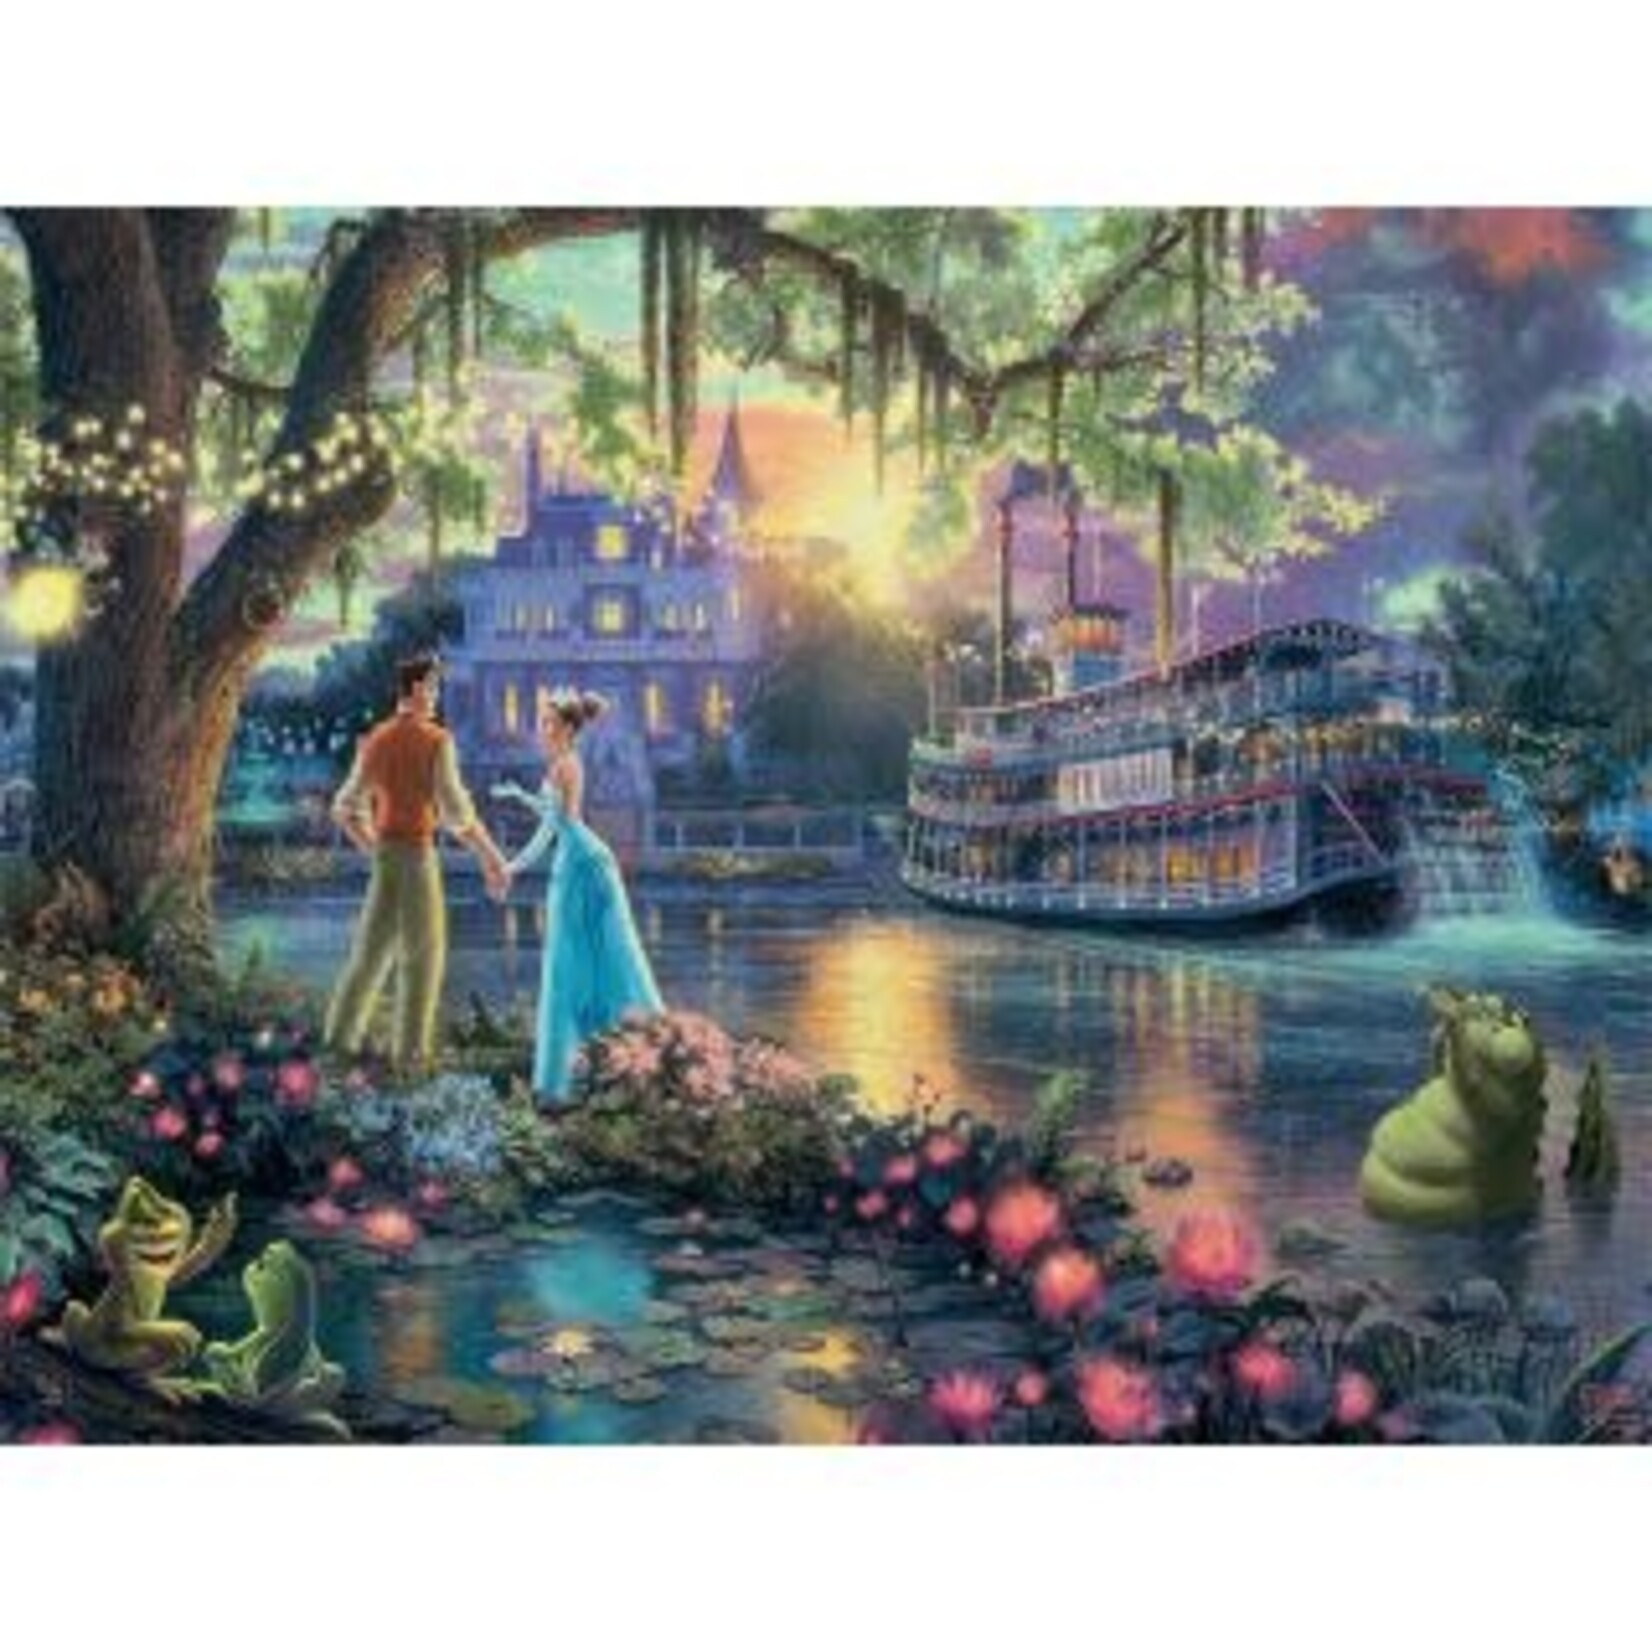 Disney Princess and the Frog 750 Piece Puzzle Thomas Kinkade